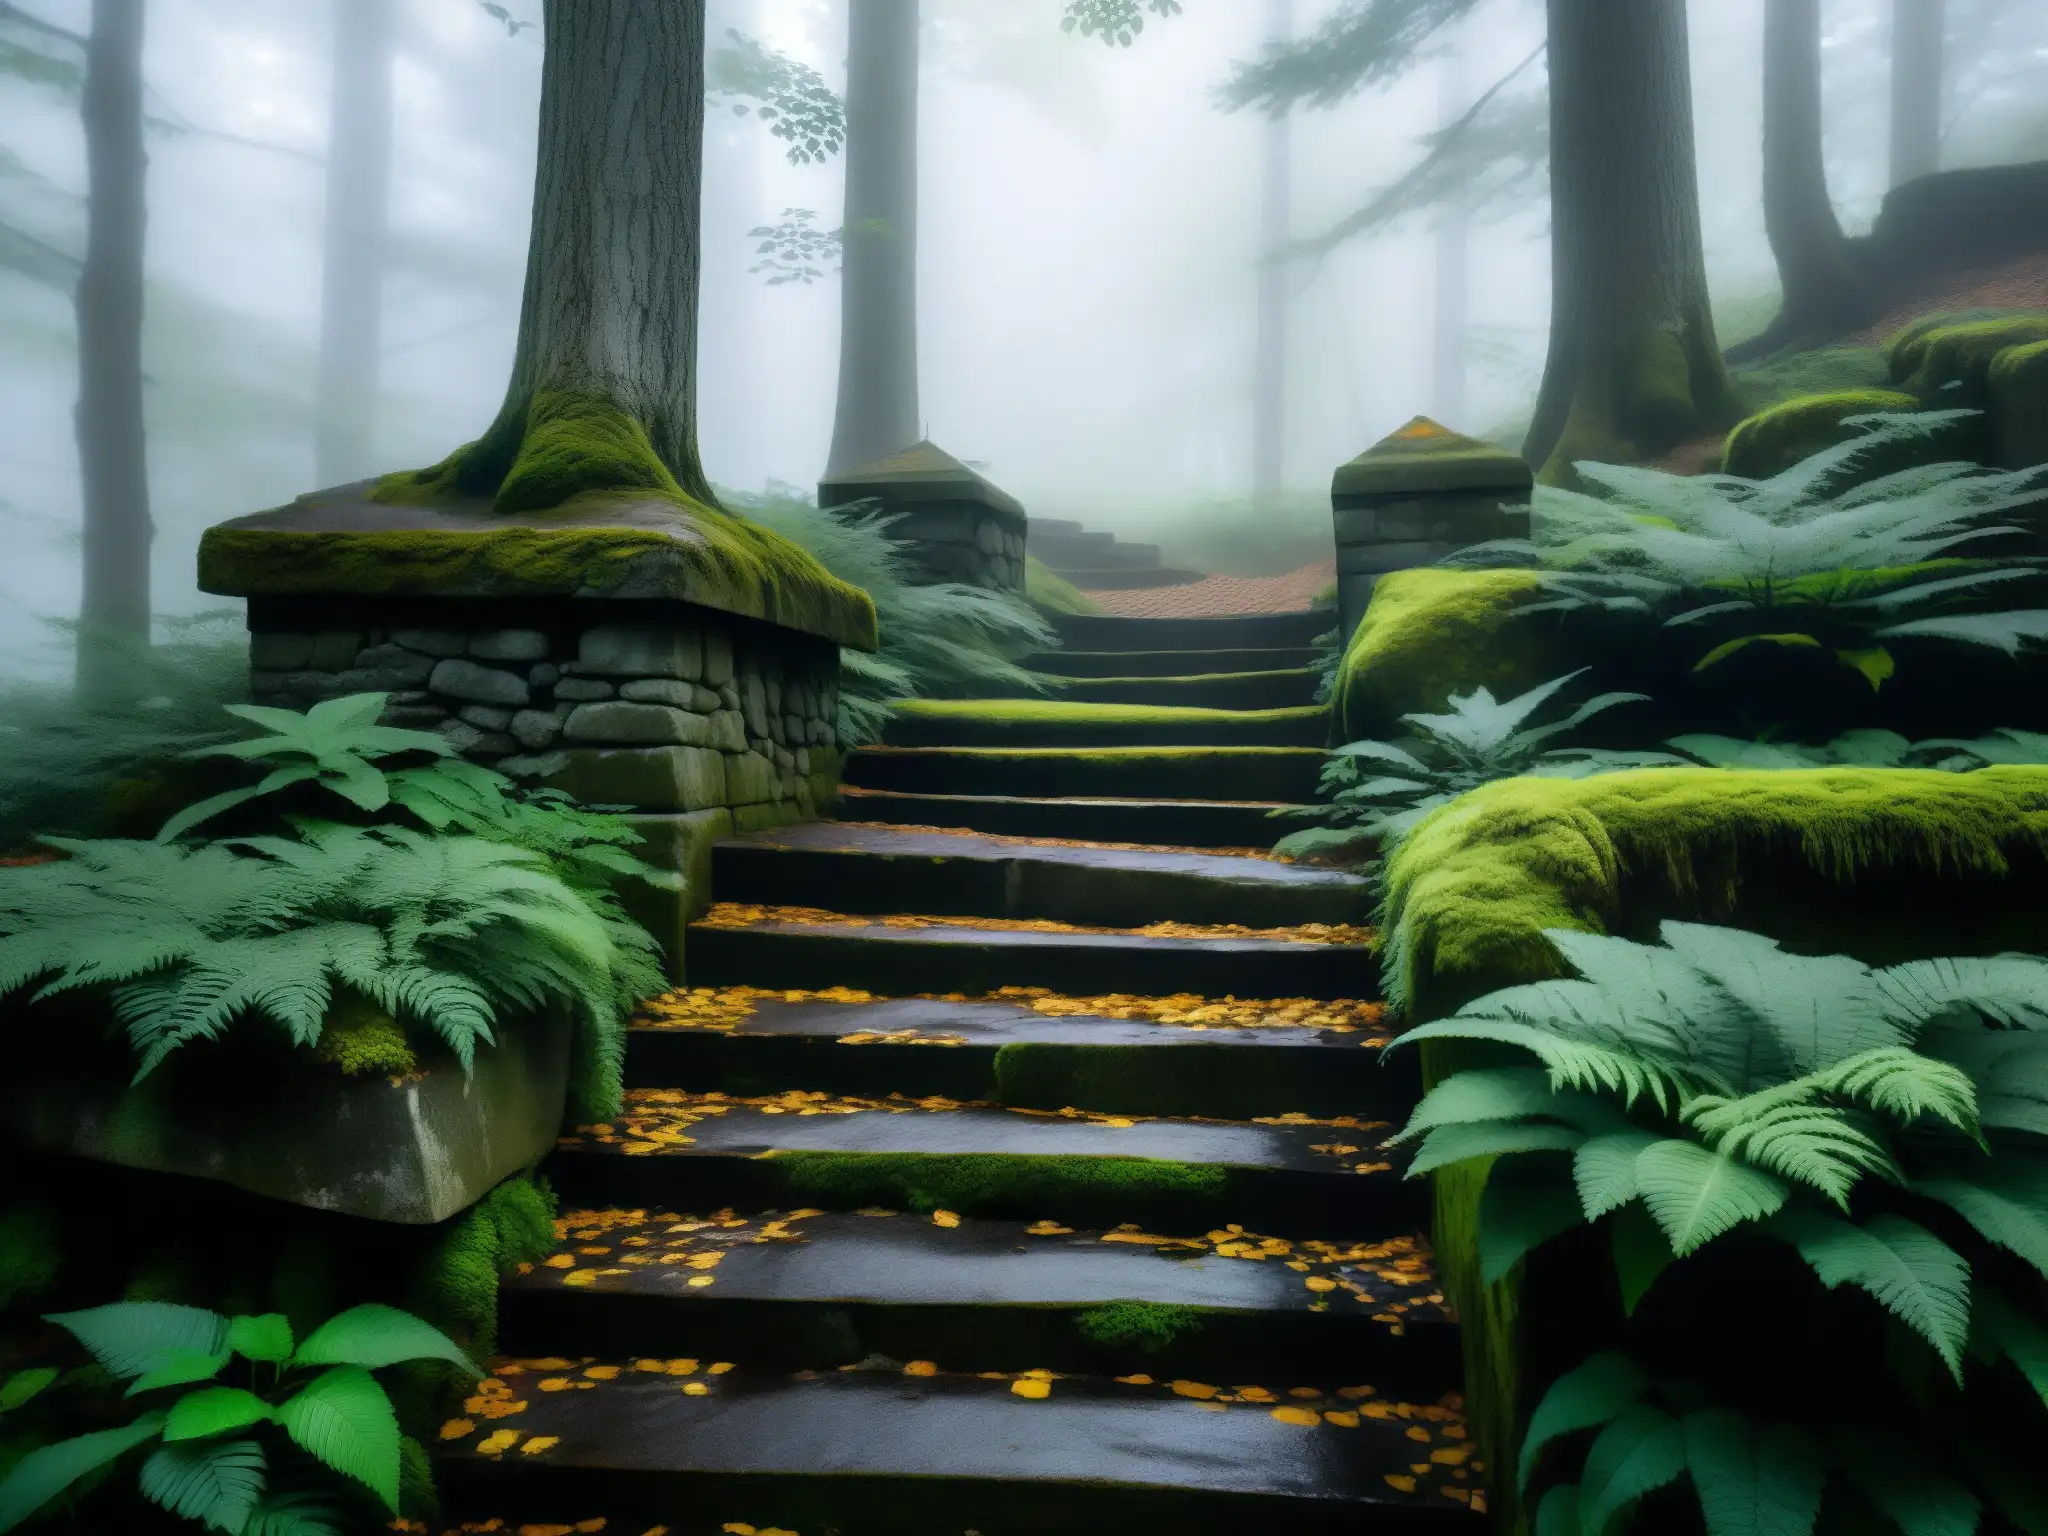 Un escalofriante y misterioso camino de piedra desgastada que desciende hacia la oscuridad, rodeado de árboles antiguos y neblina